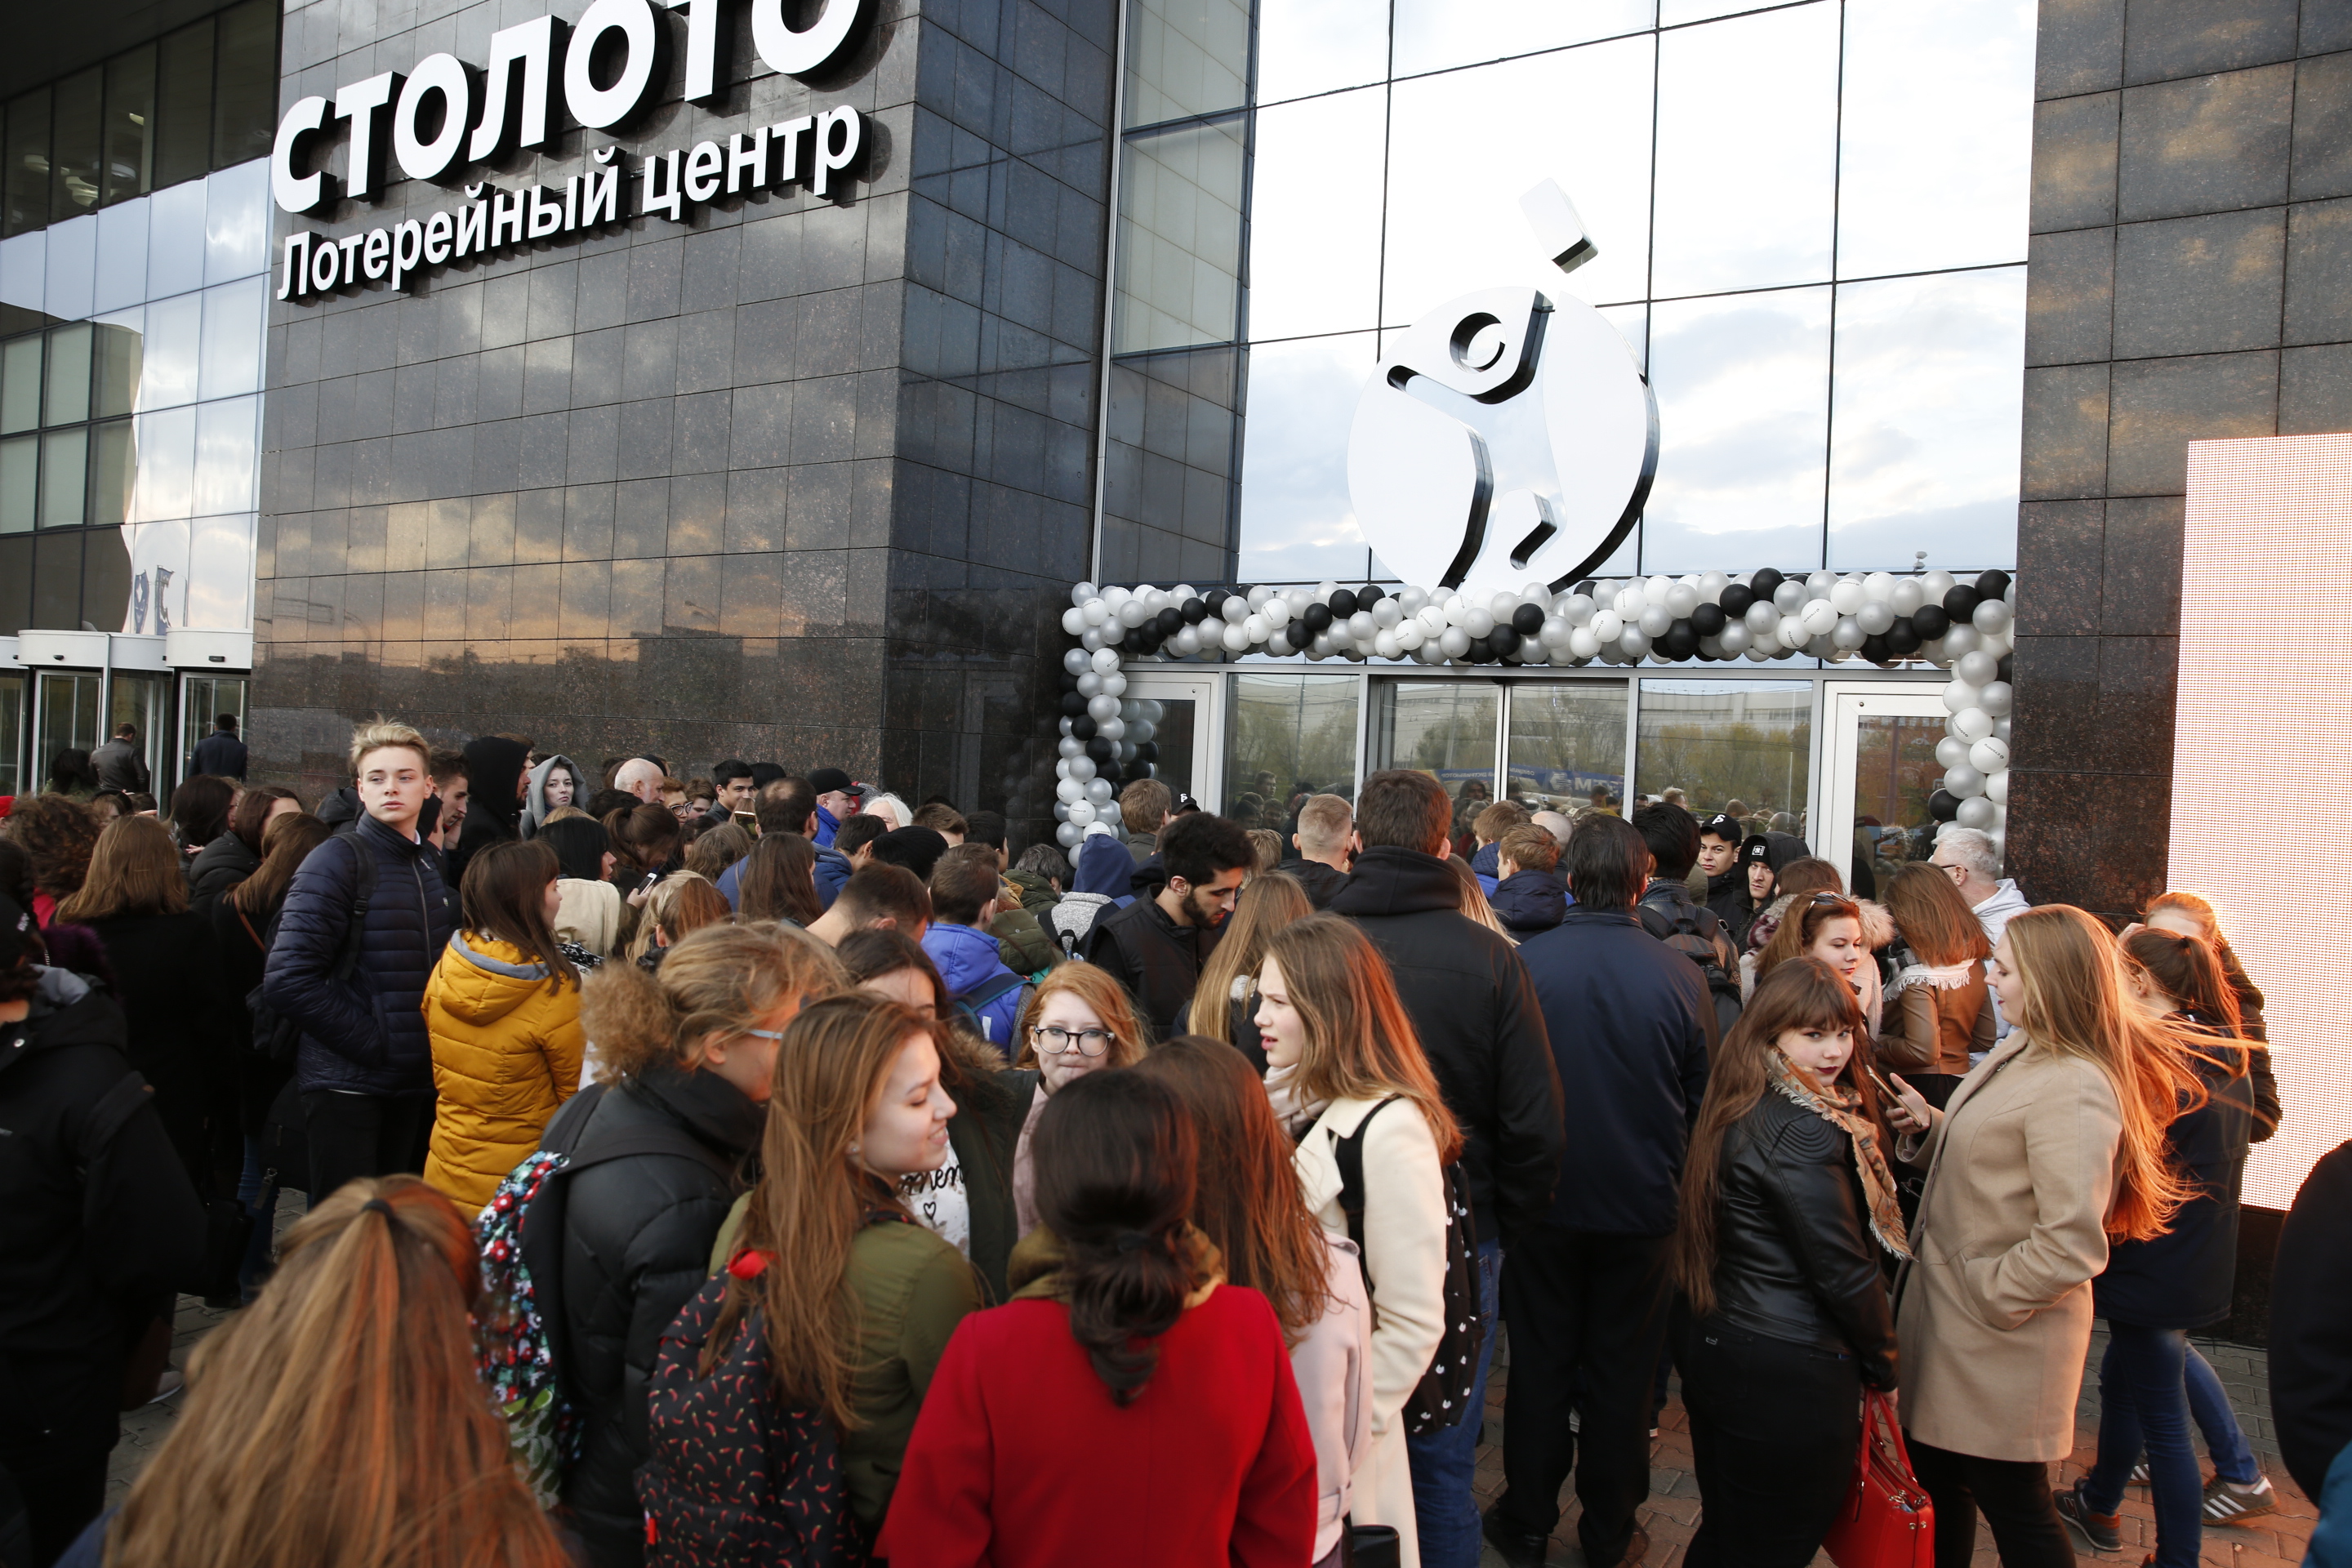 «Столото» открывает уникальный лотерейный центр в Москве. Теперь тиражи государственных лотерей можно увидеть своими глазами в прямом эфире